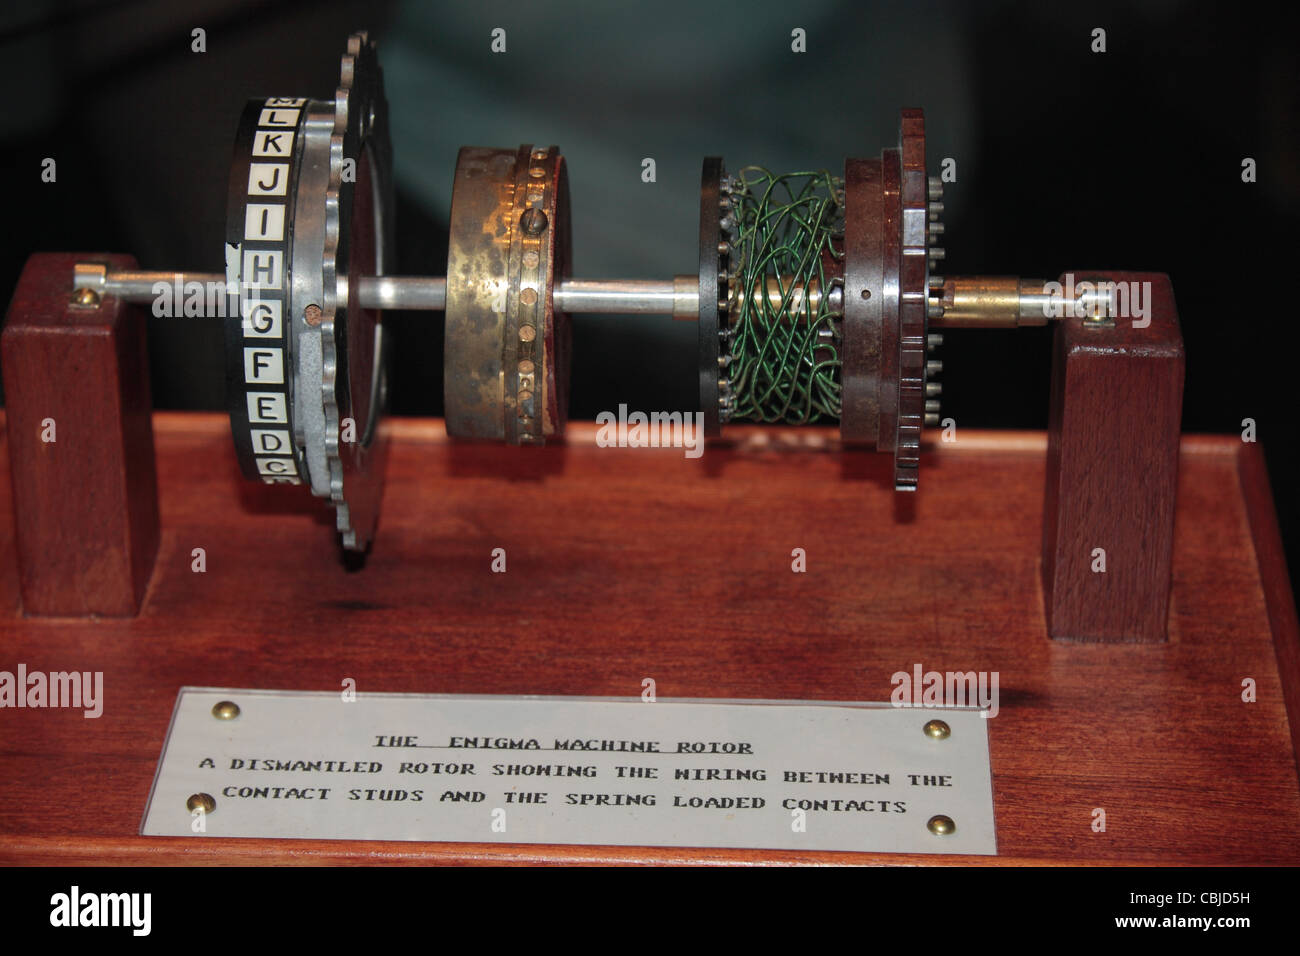 Eine Enigma-Maschine-Rotor auf dem Display zeigt die interne Verkabelung in Bletchley Park, Bletchley. Buckinghamshire, Großbritannien. Stockfoto